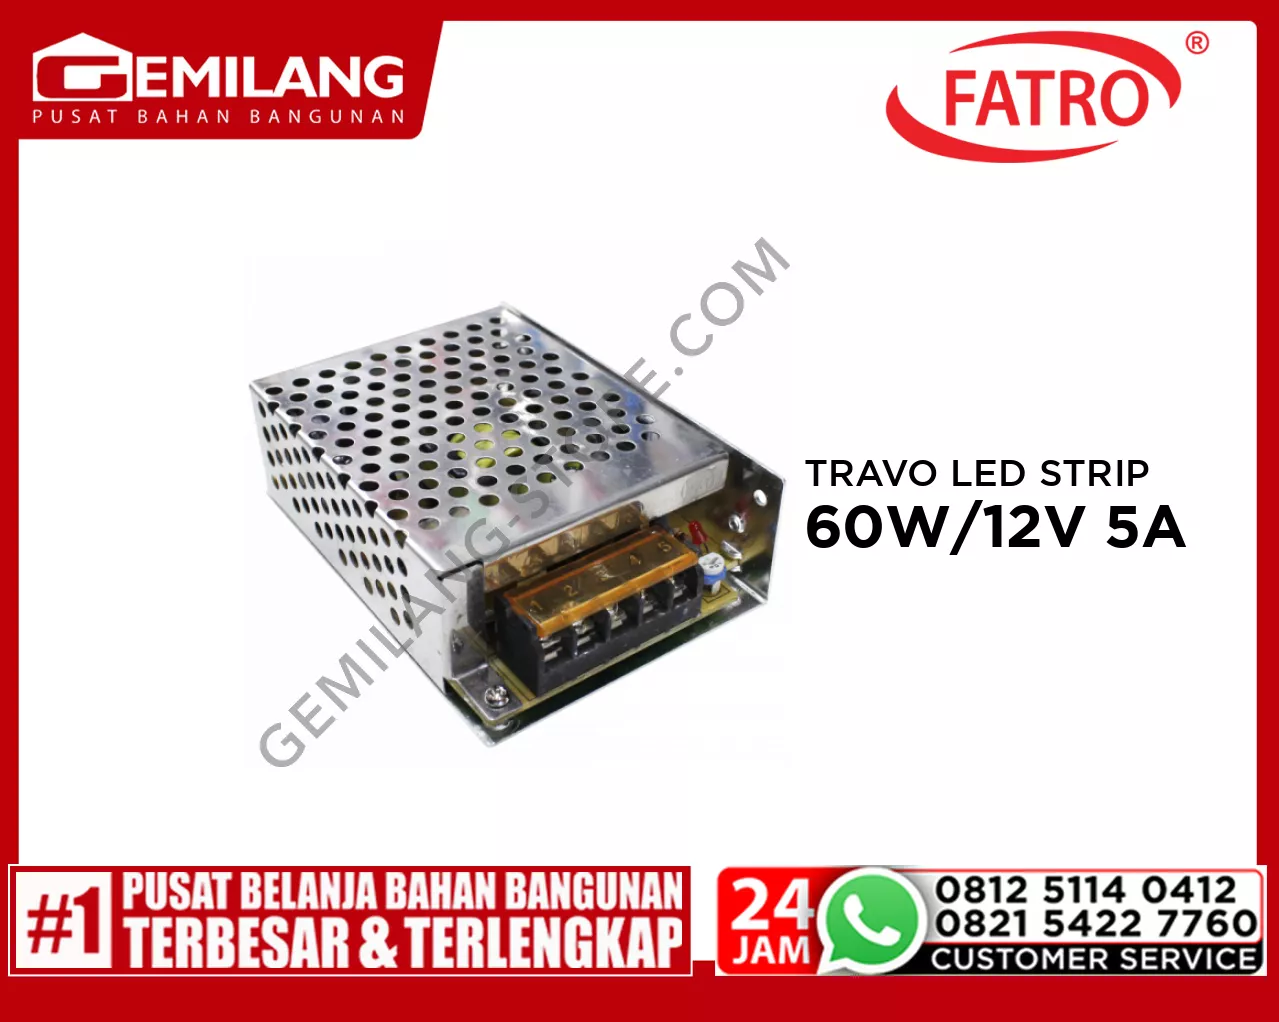 FATRO TRAVO LED STRIP 60W/12V 5A